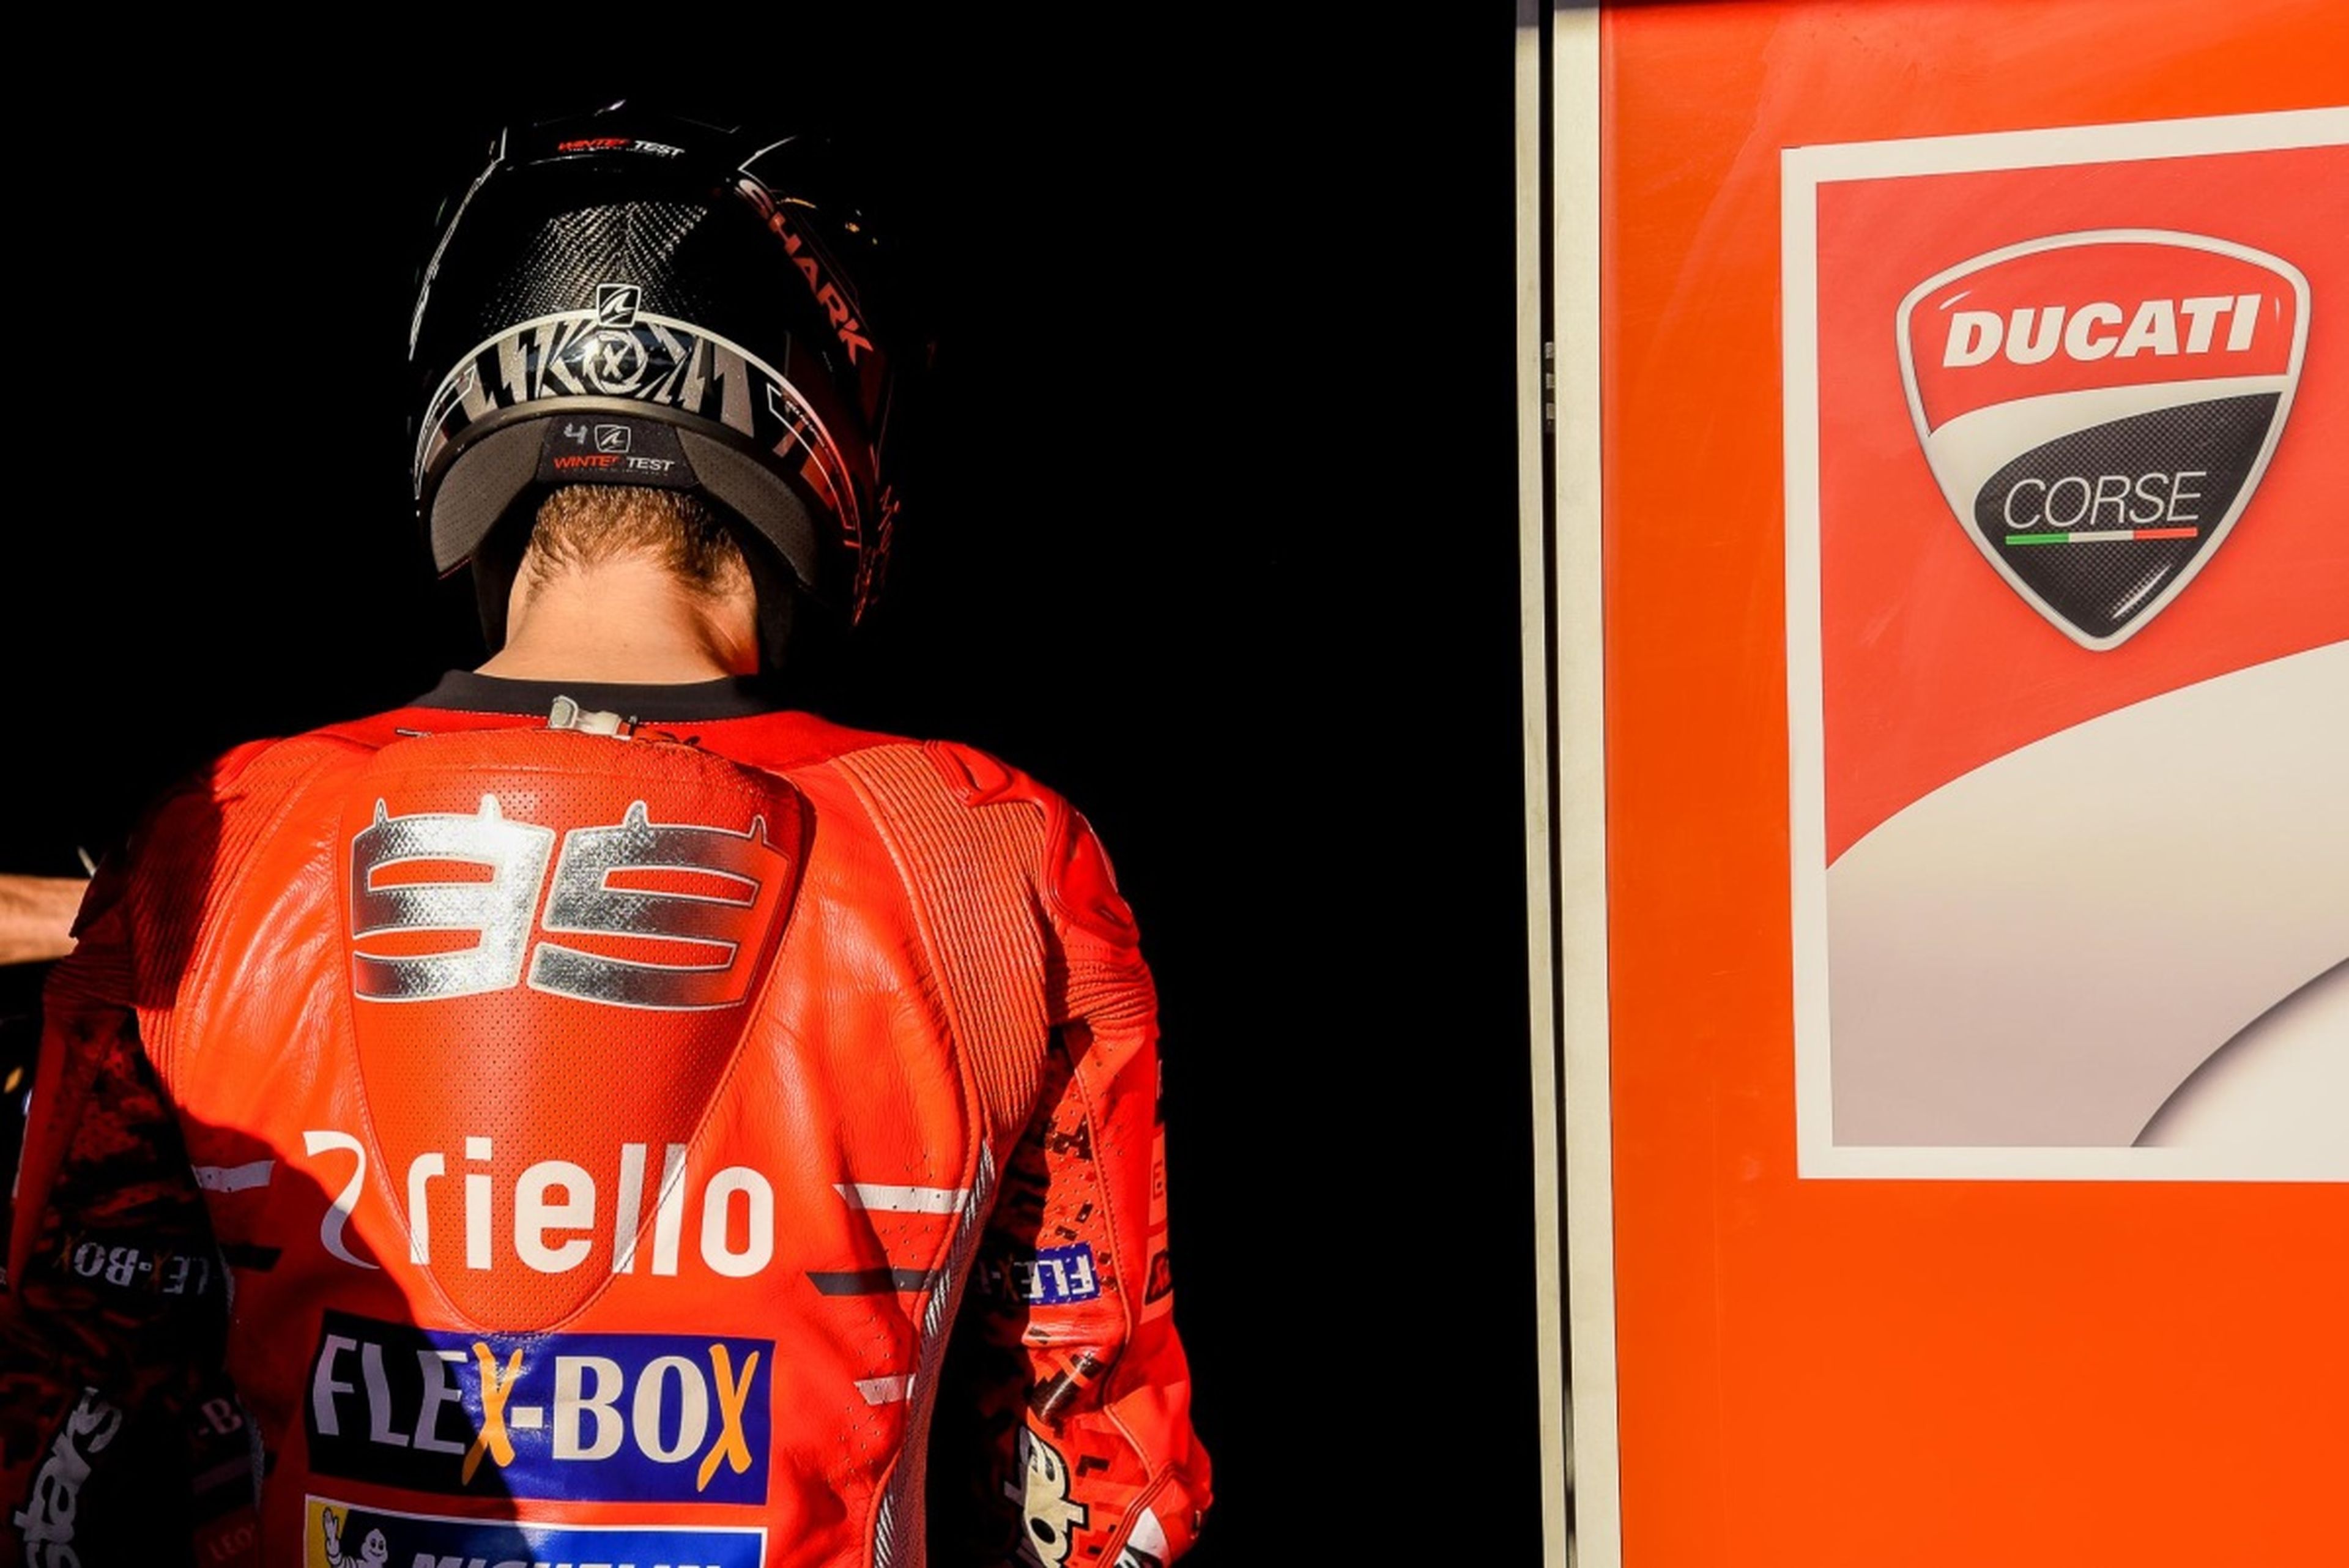 Ducati, incapaz de explicar los problemas de frenos de Lorenzo en Qatar